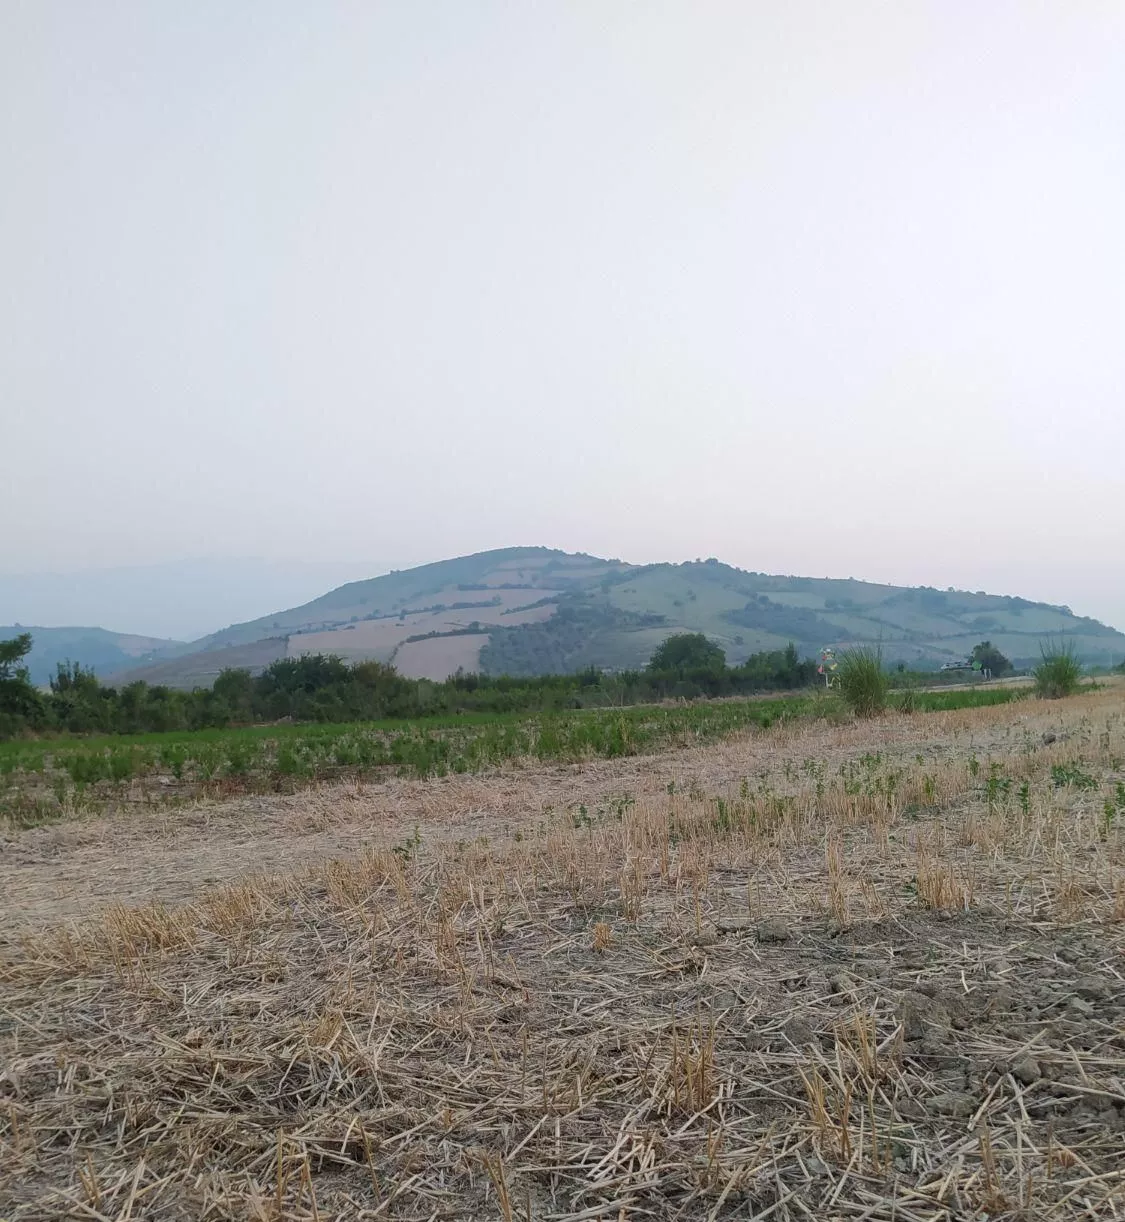 زمین باغی کشاورزی روستا سید میران